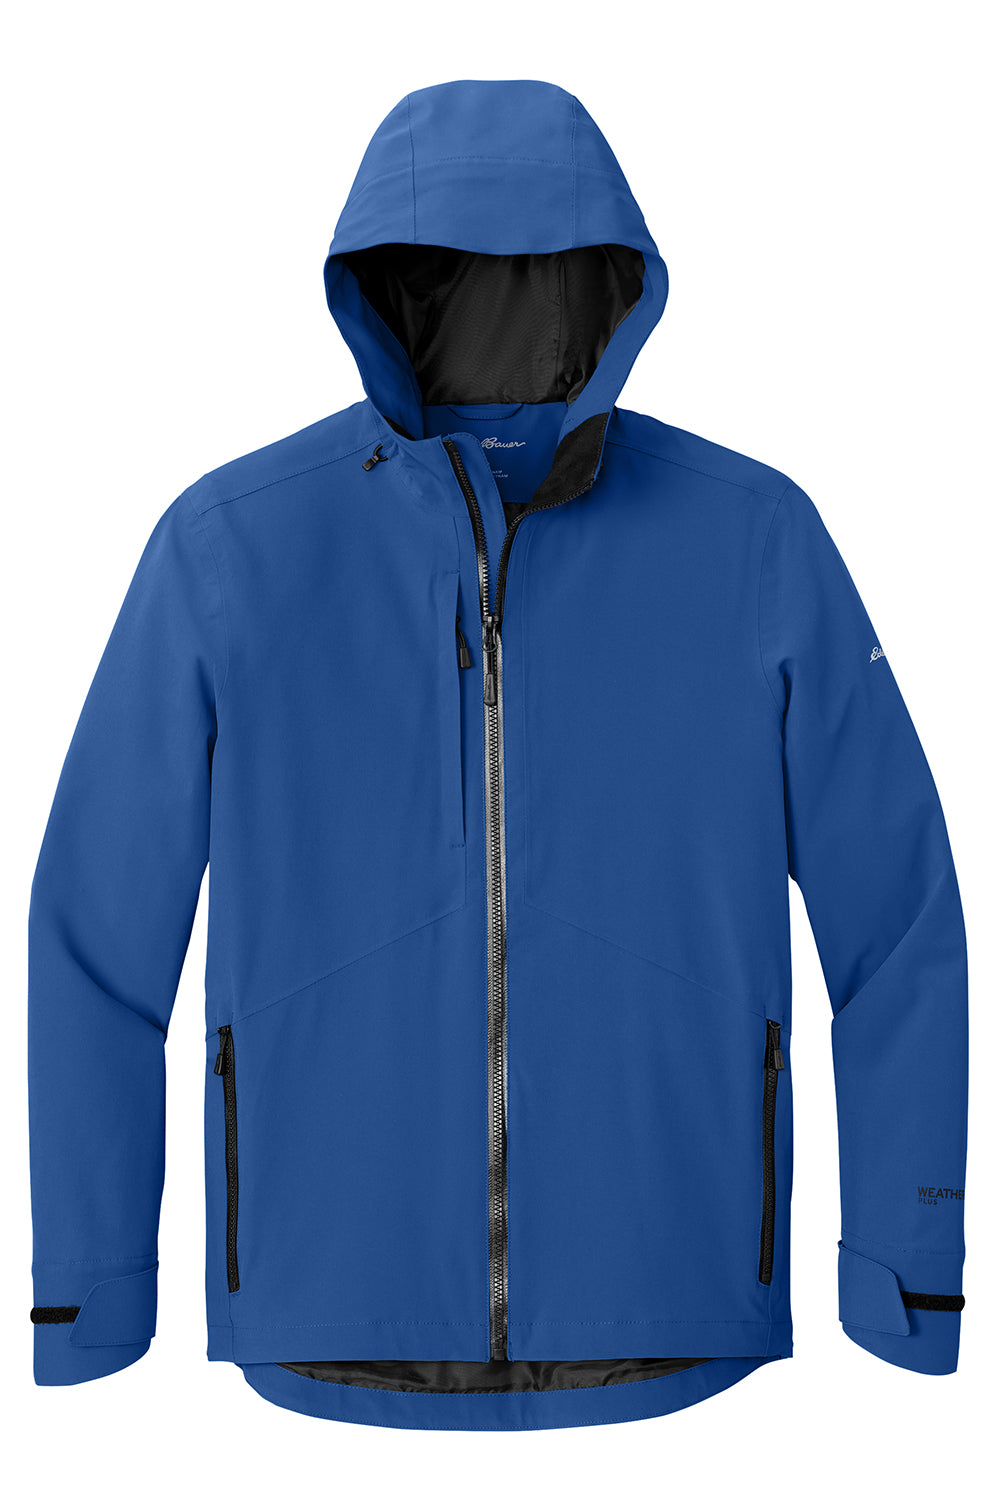 Eddie Bauer EB560 Mens WeatherEdge Plus Waterproof Full Zip Hooded Jacket Cobalt Blue Flat Front